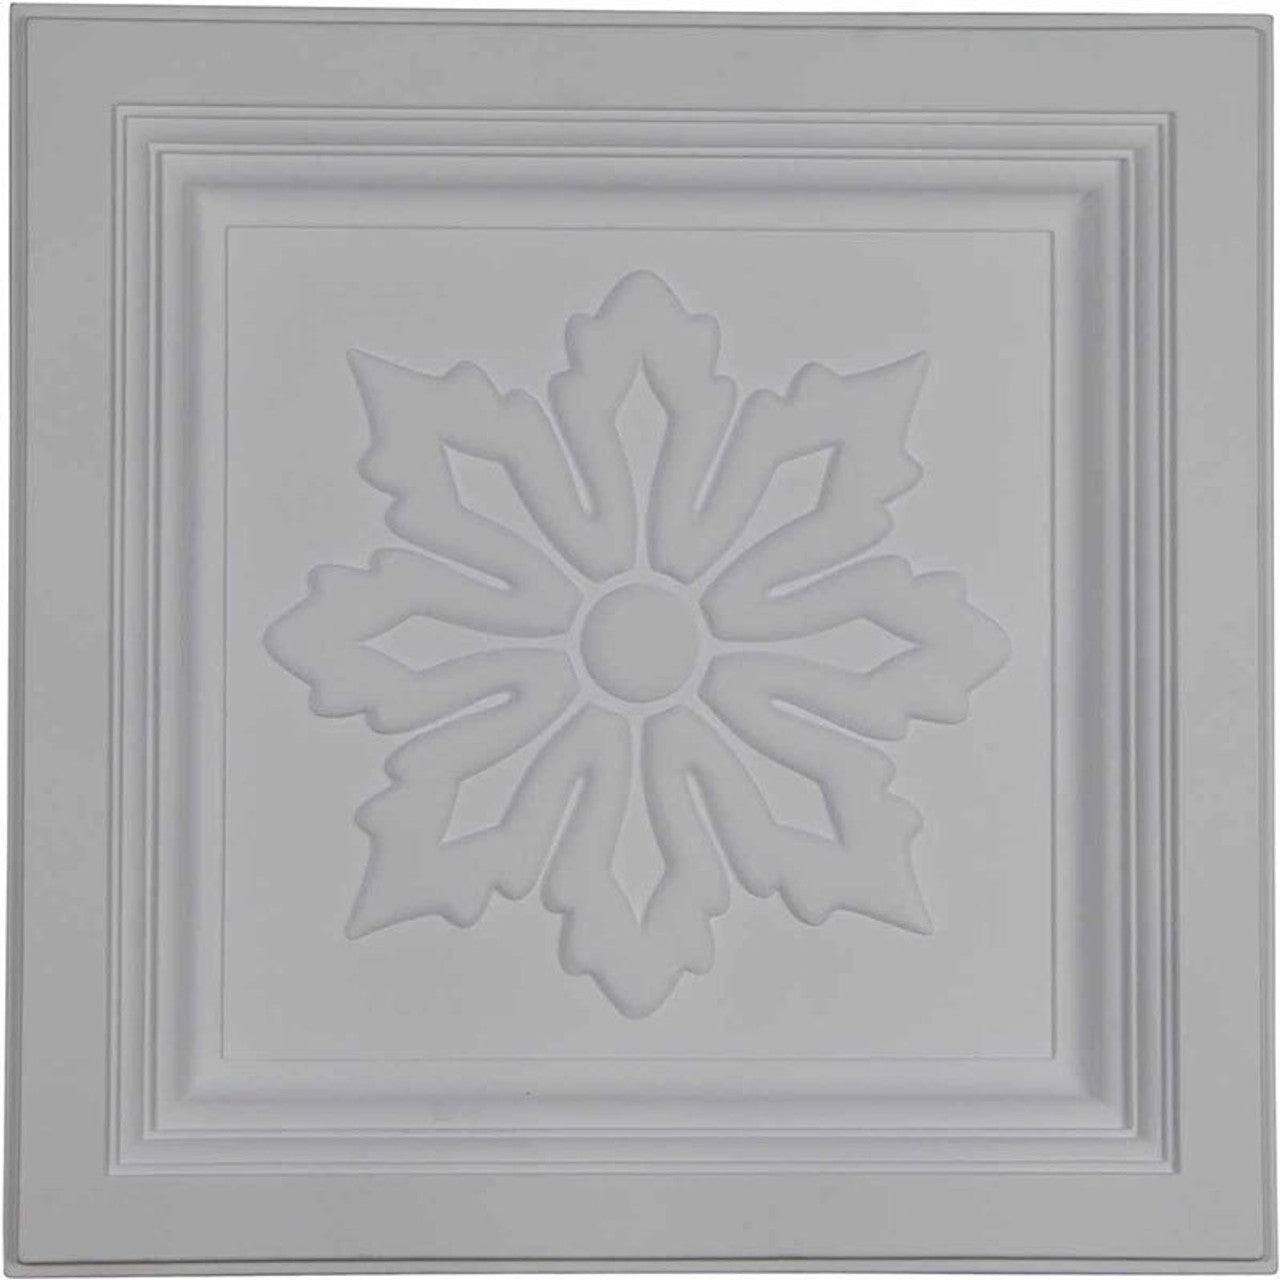 Floral - Urethane Ceiling Tile - 24"x24"